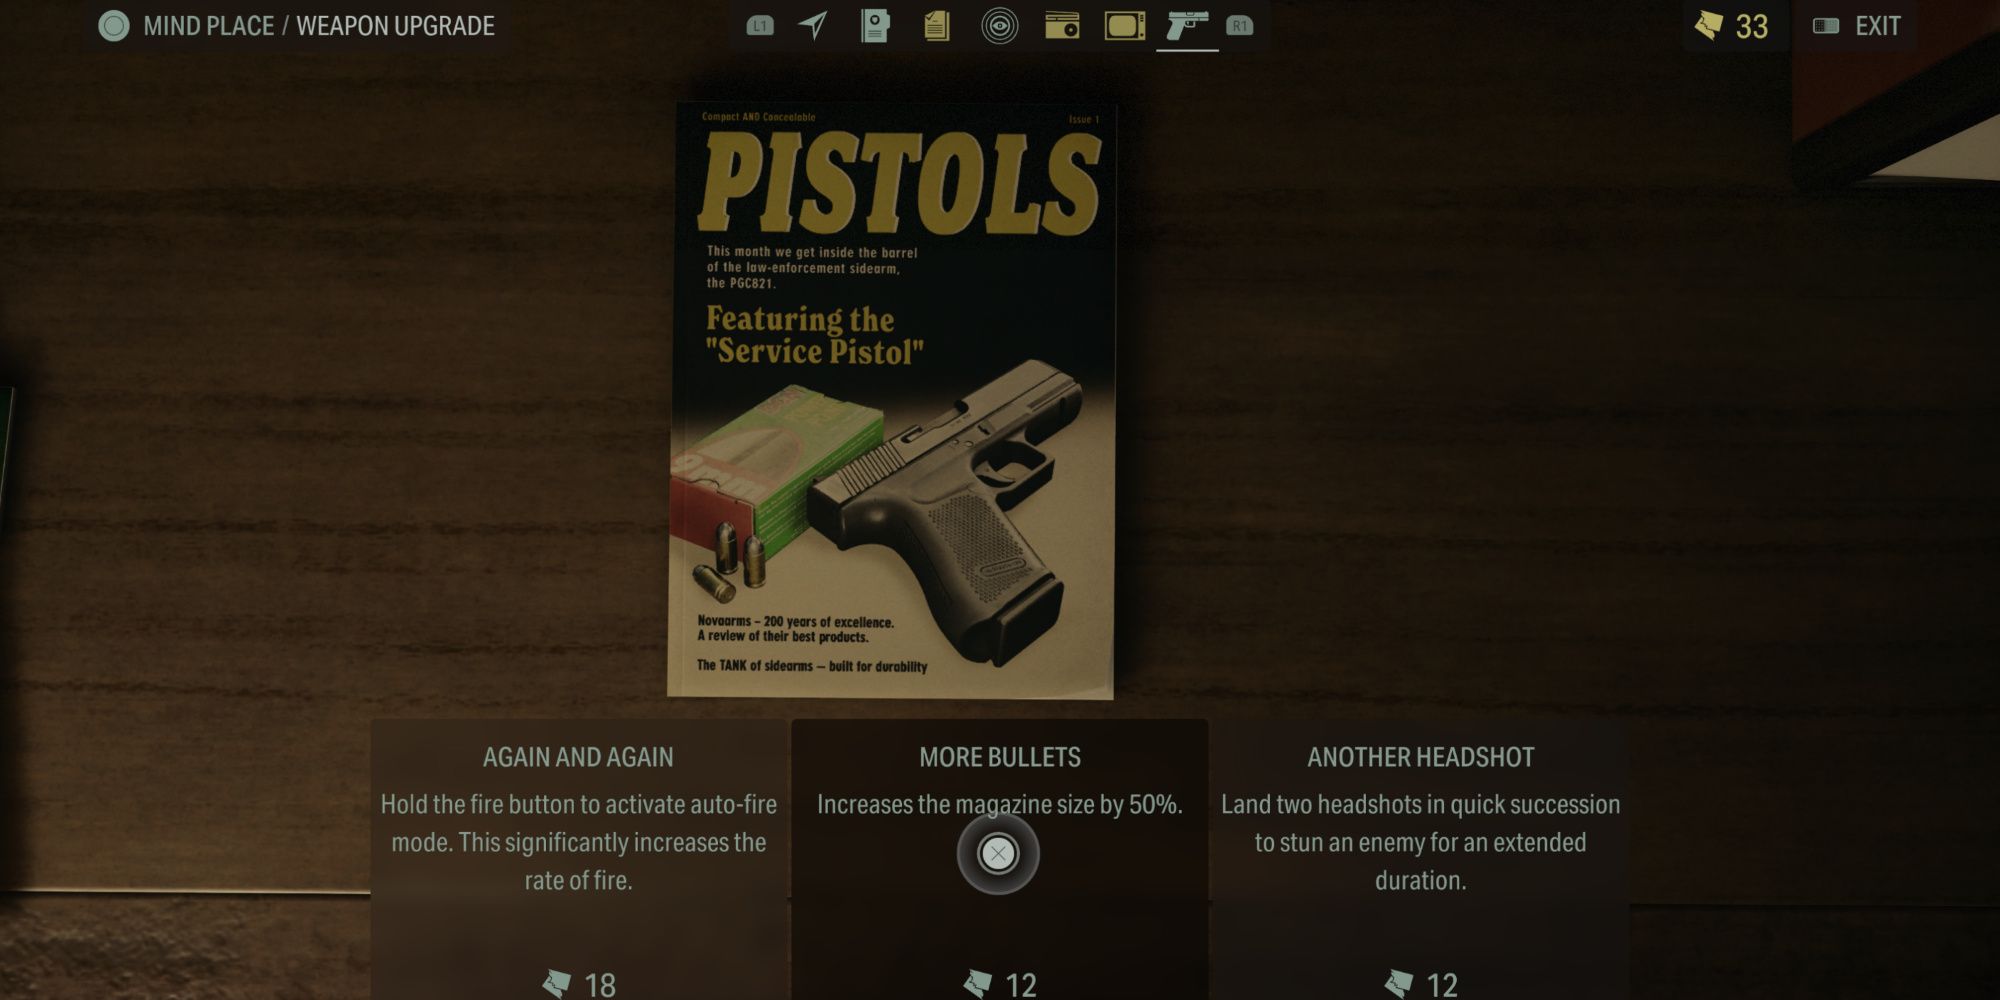 More Bullets gun upgrade in Alan Wake 2